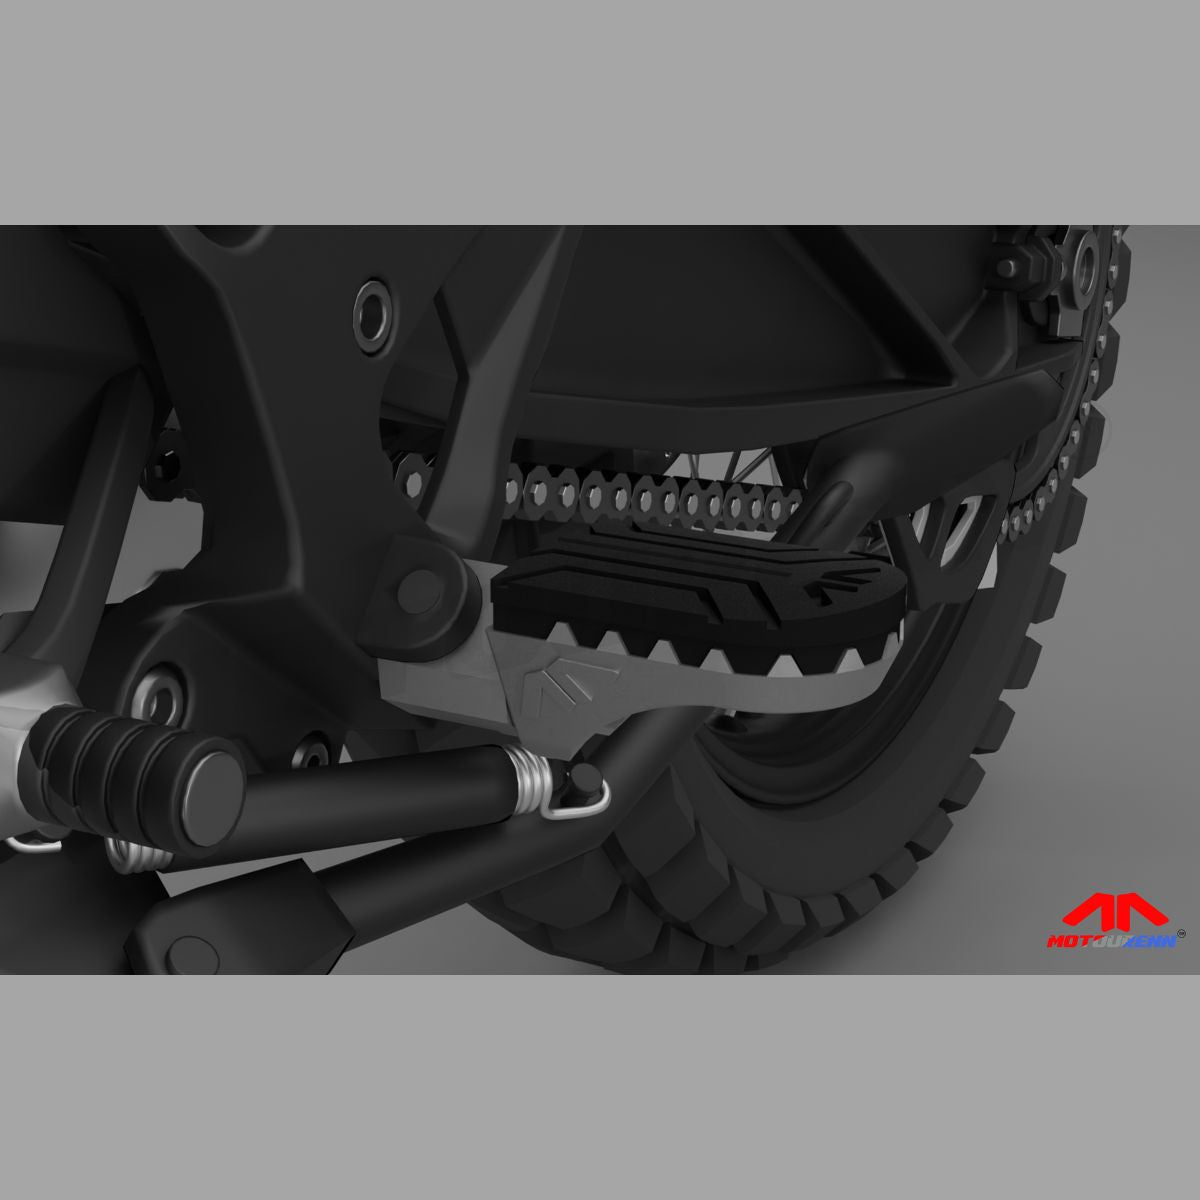 KTM Adventure 390 / 250 Adventurist Premium Adjustable Foot Pegs